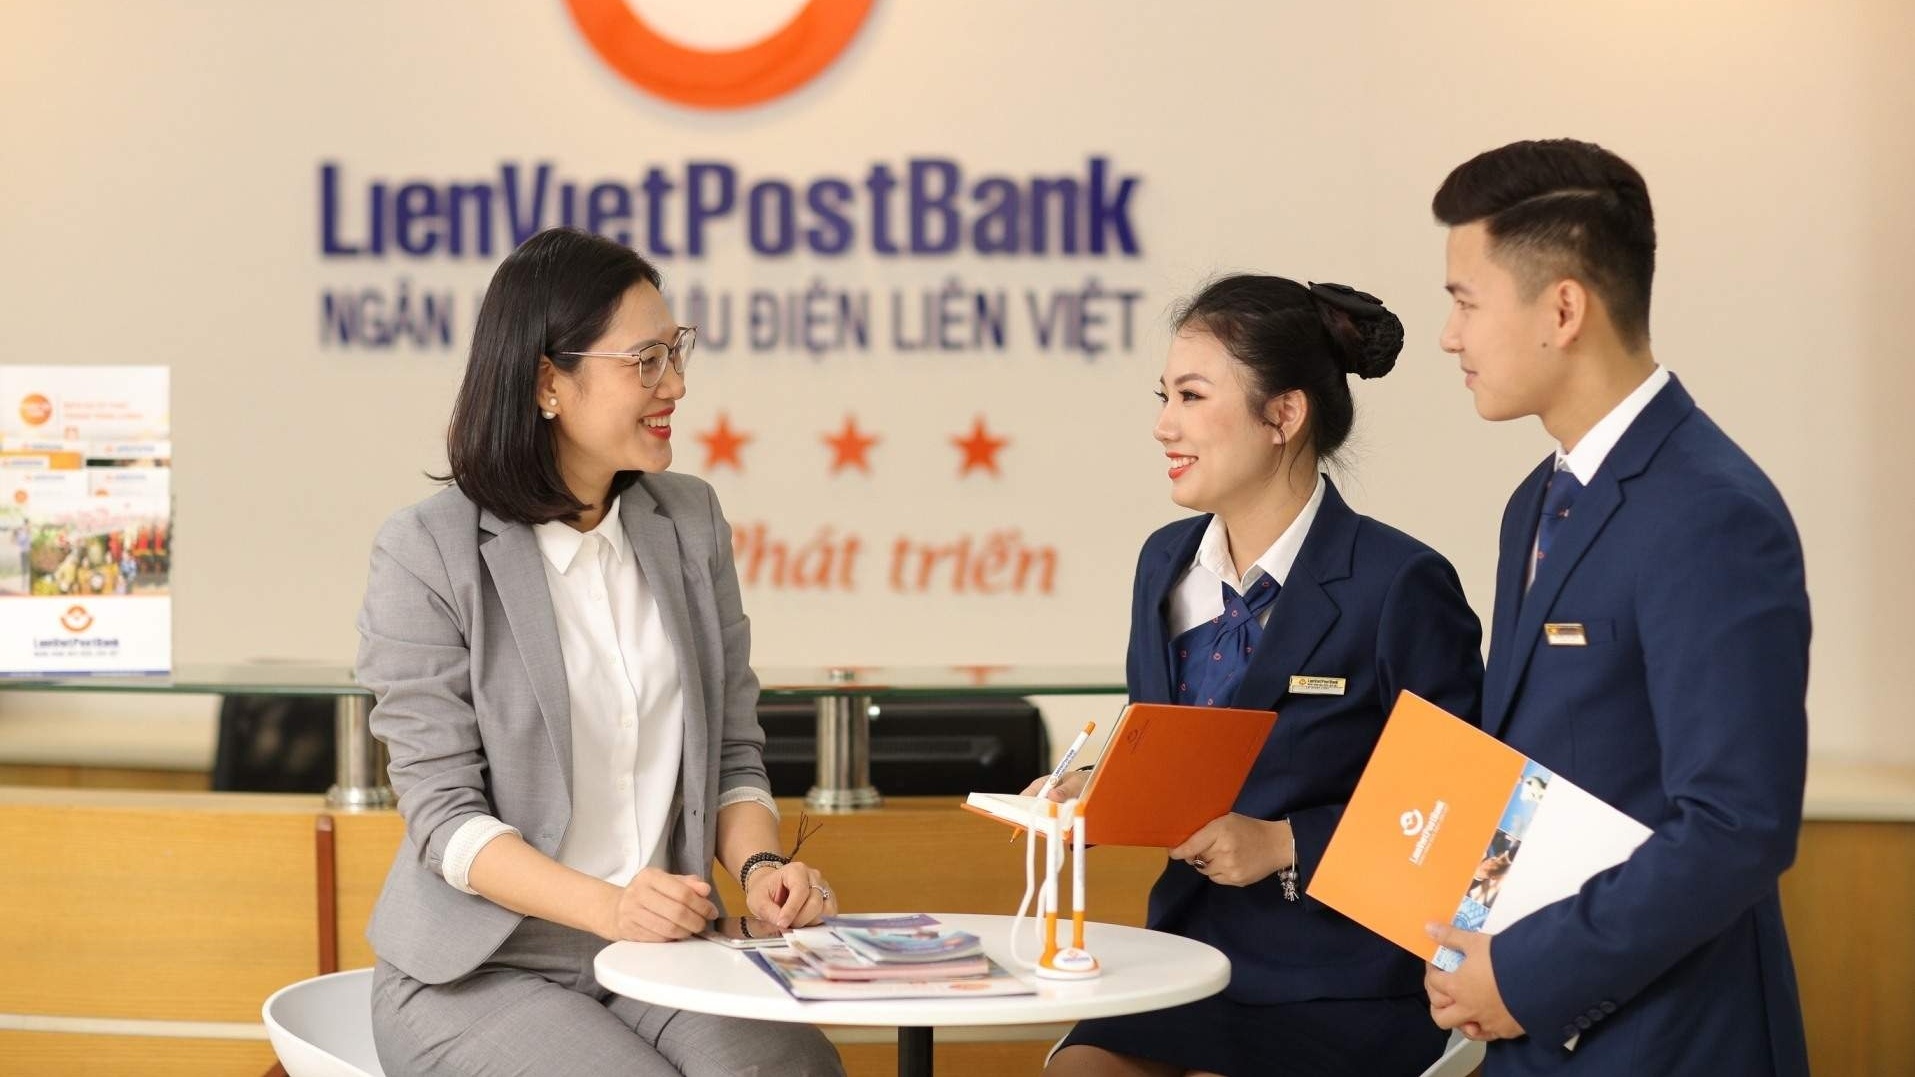 Ngân hàng Bưu điện Liên Việt chi nhánh Quảng Bình có nhu cầu tuyển dụng nhiều vị trí